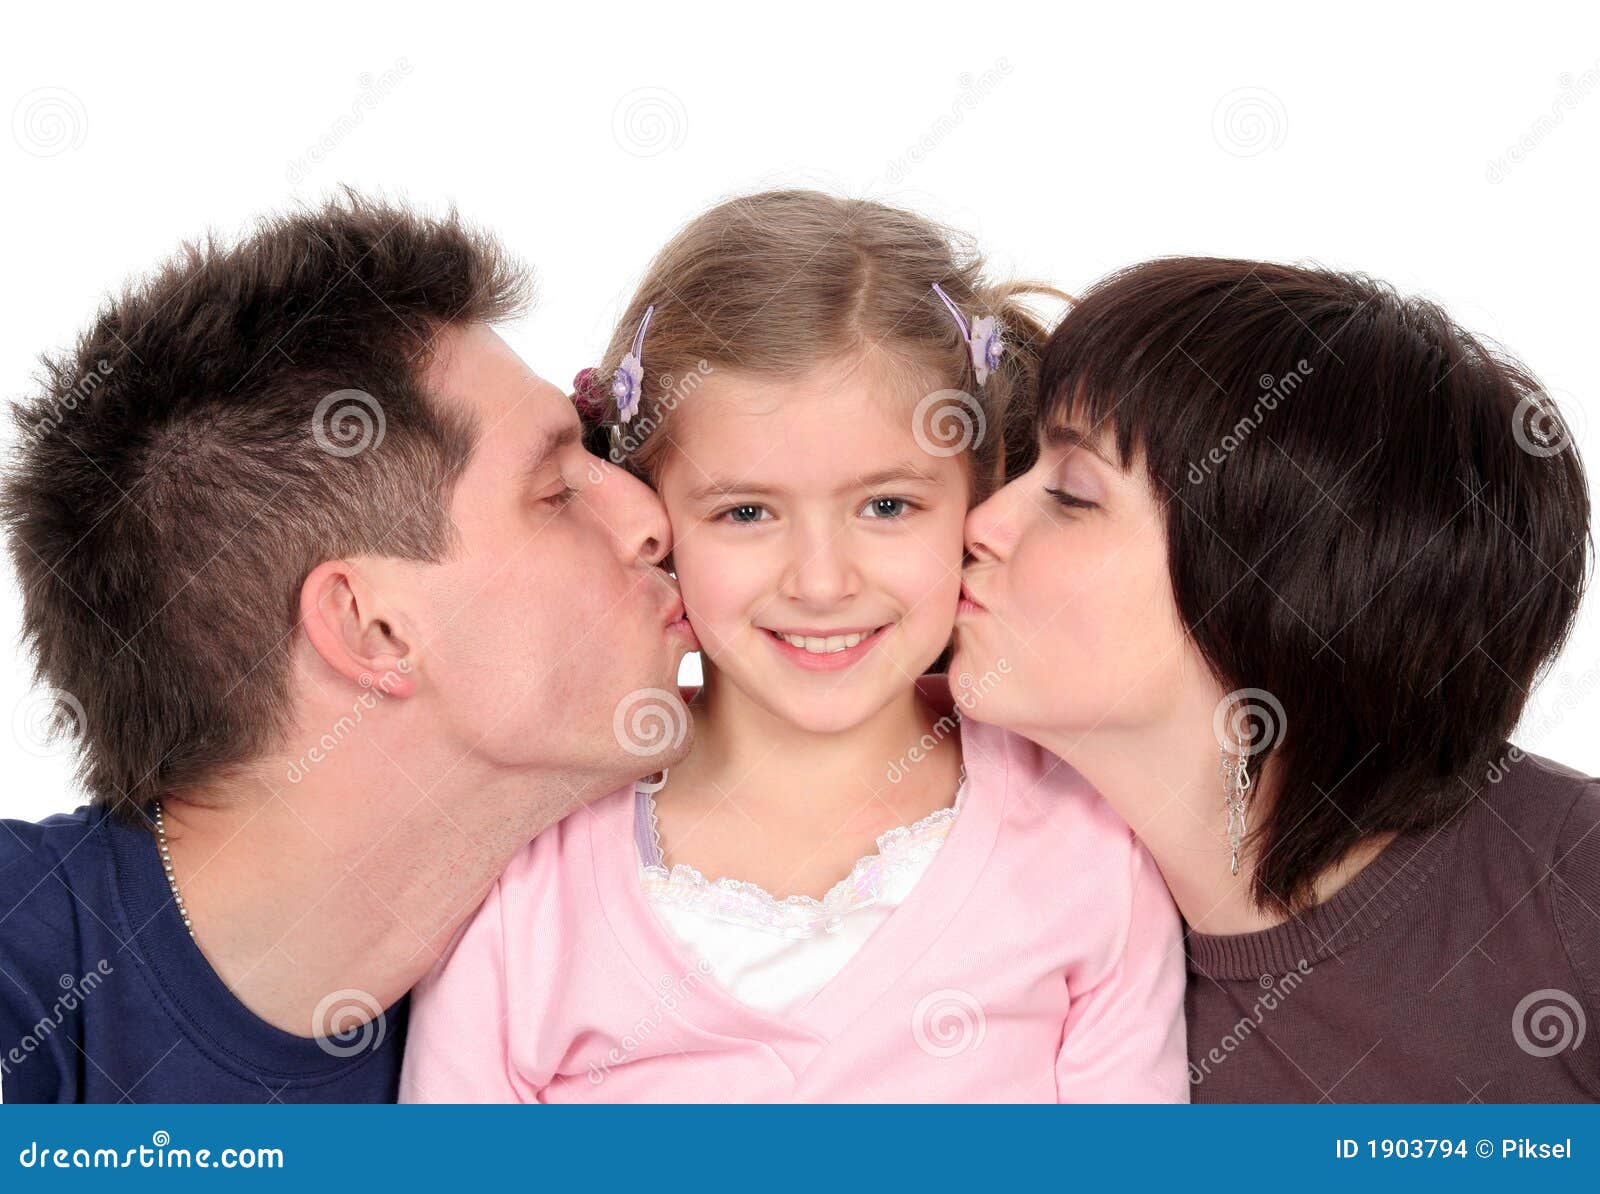 亲吻在白色墙壁上的妇女人 库存图片. 图片 包括有 子项, 做父母的, 标记, 亲吻, 墙壁, 图画, 自然 - 121461291